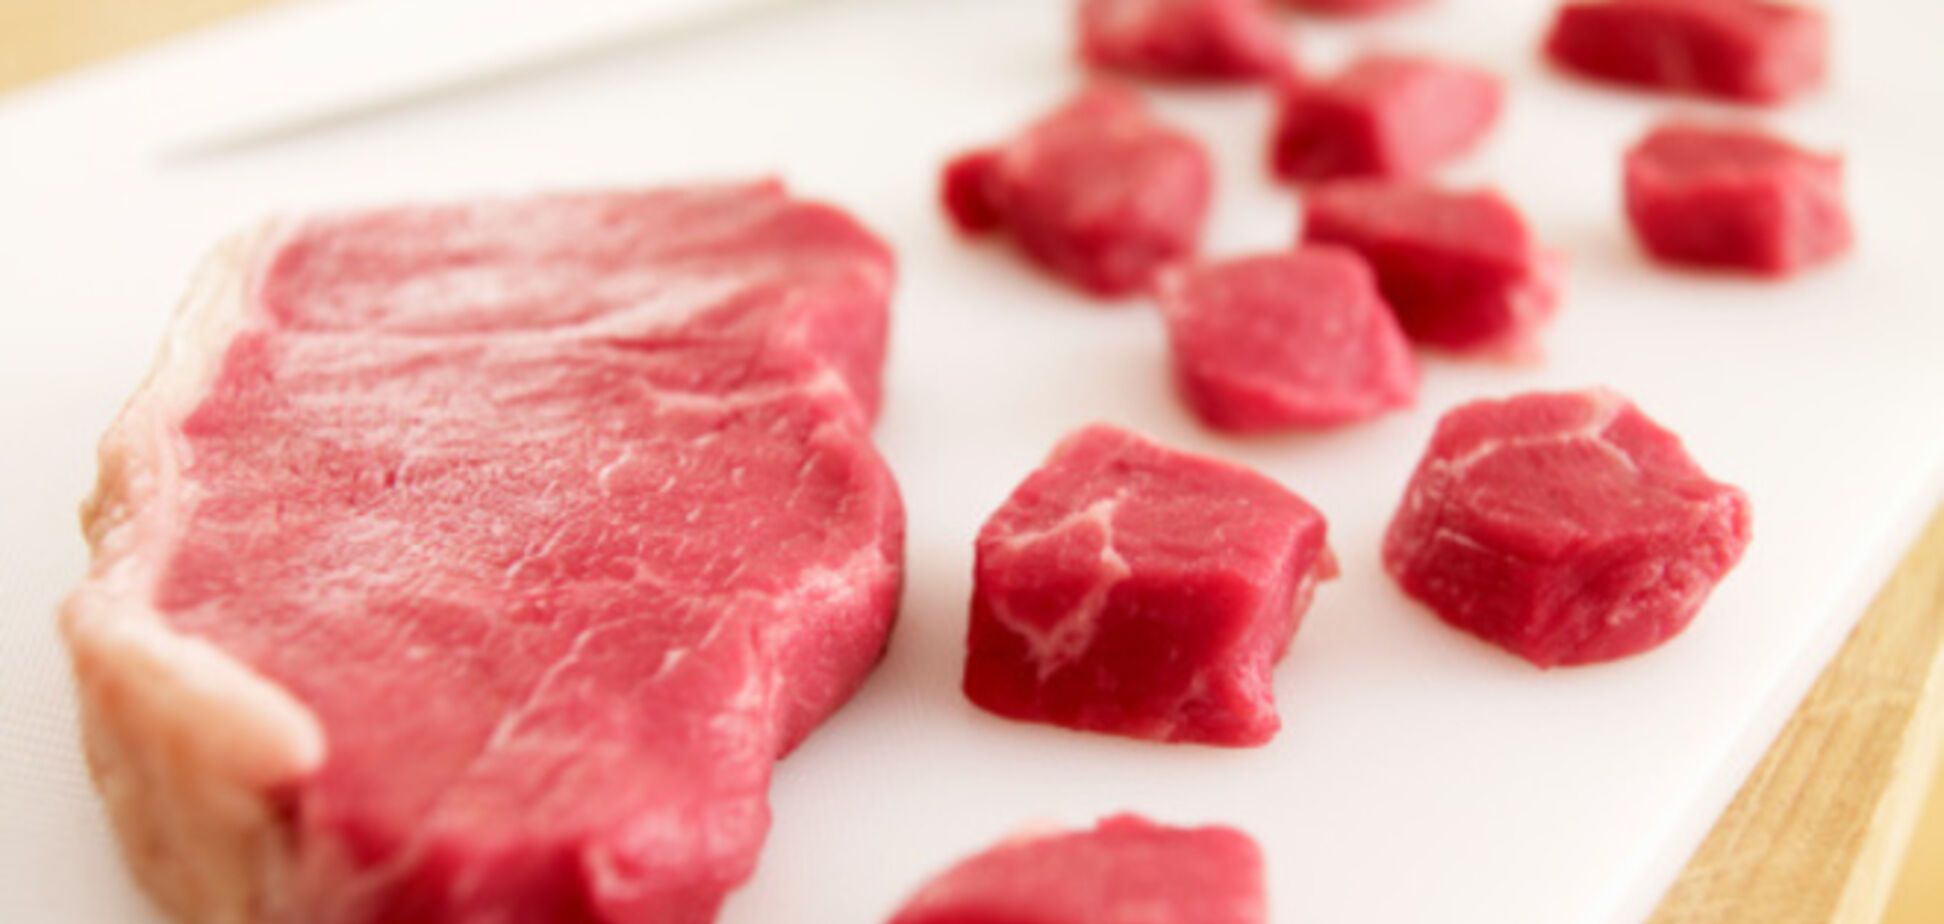 6 химикатов, которые попадают в наш организм вместе с мясом